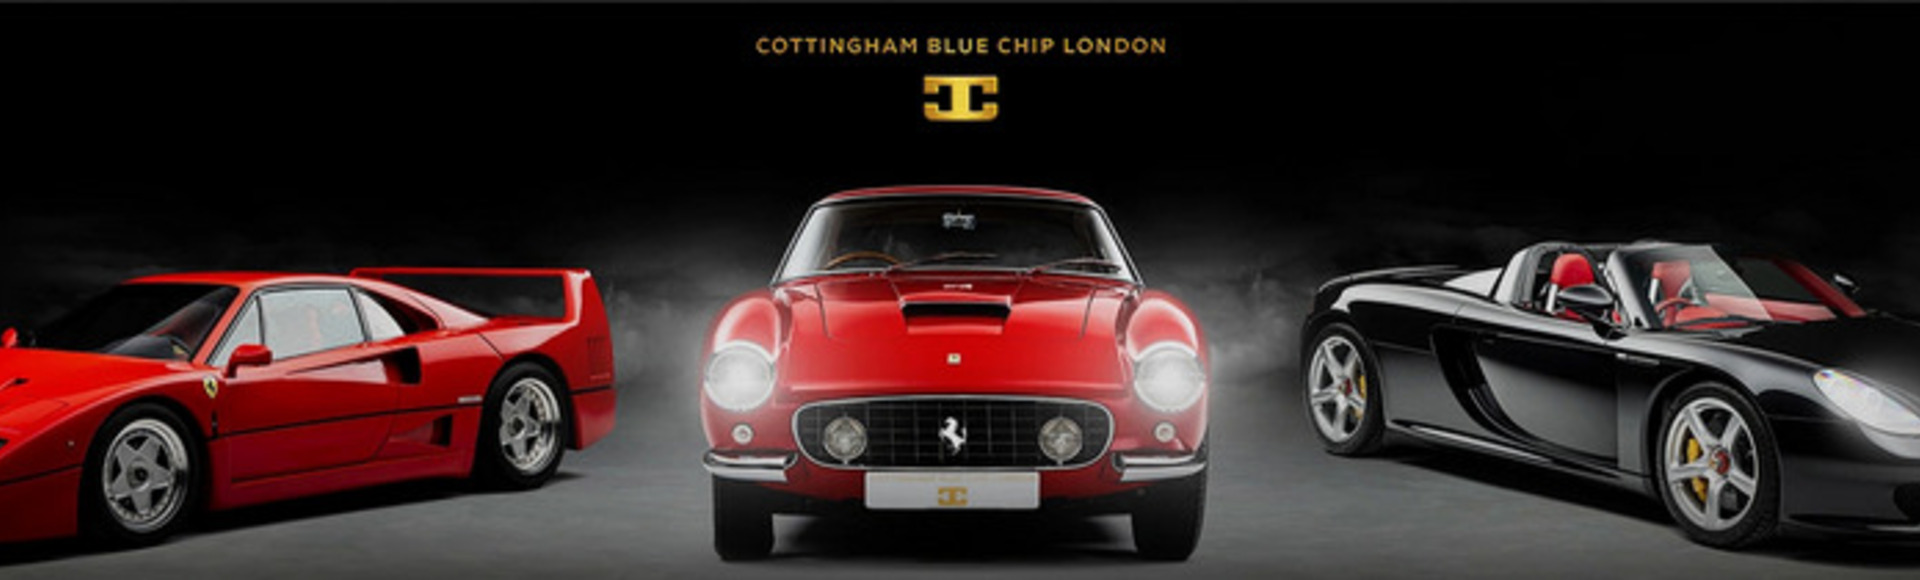 Cottingham Blue Chip London / Jeremy Cottingham